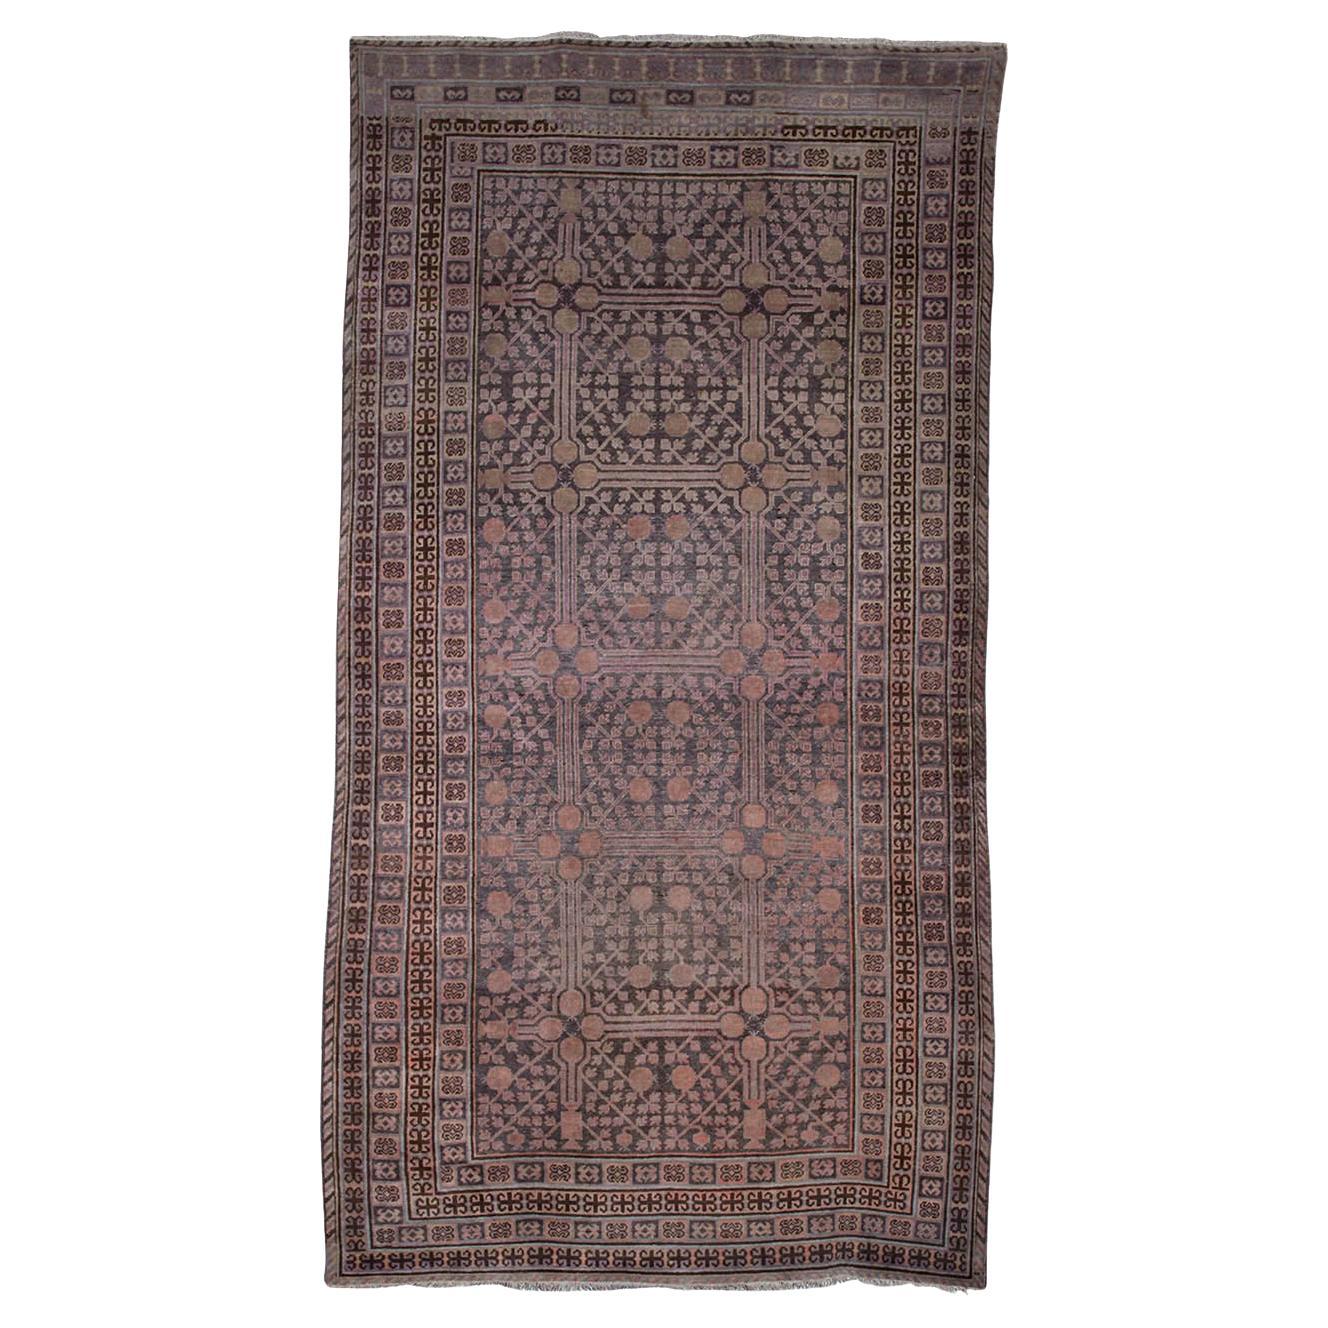 Rare Antique Kothan Carpet or Rug For Sale